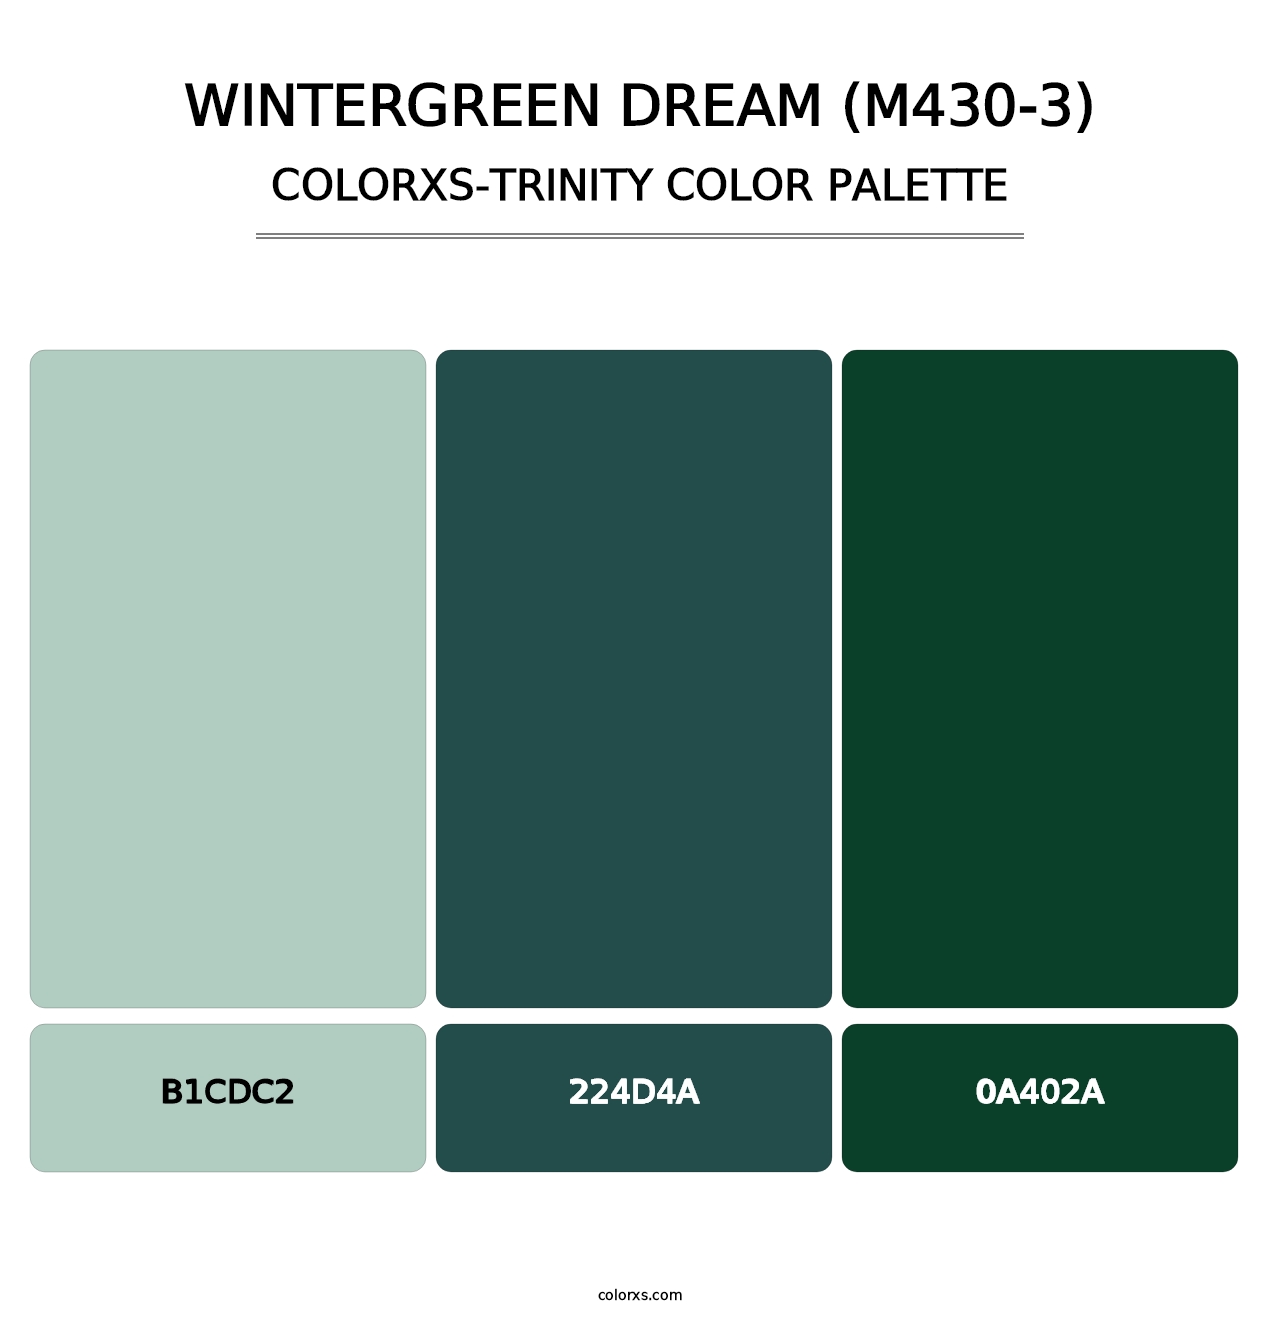 Wintergreen Dream (M430-3) - Colorxs Trinity Palette